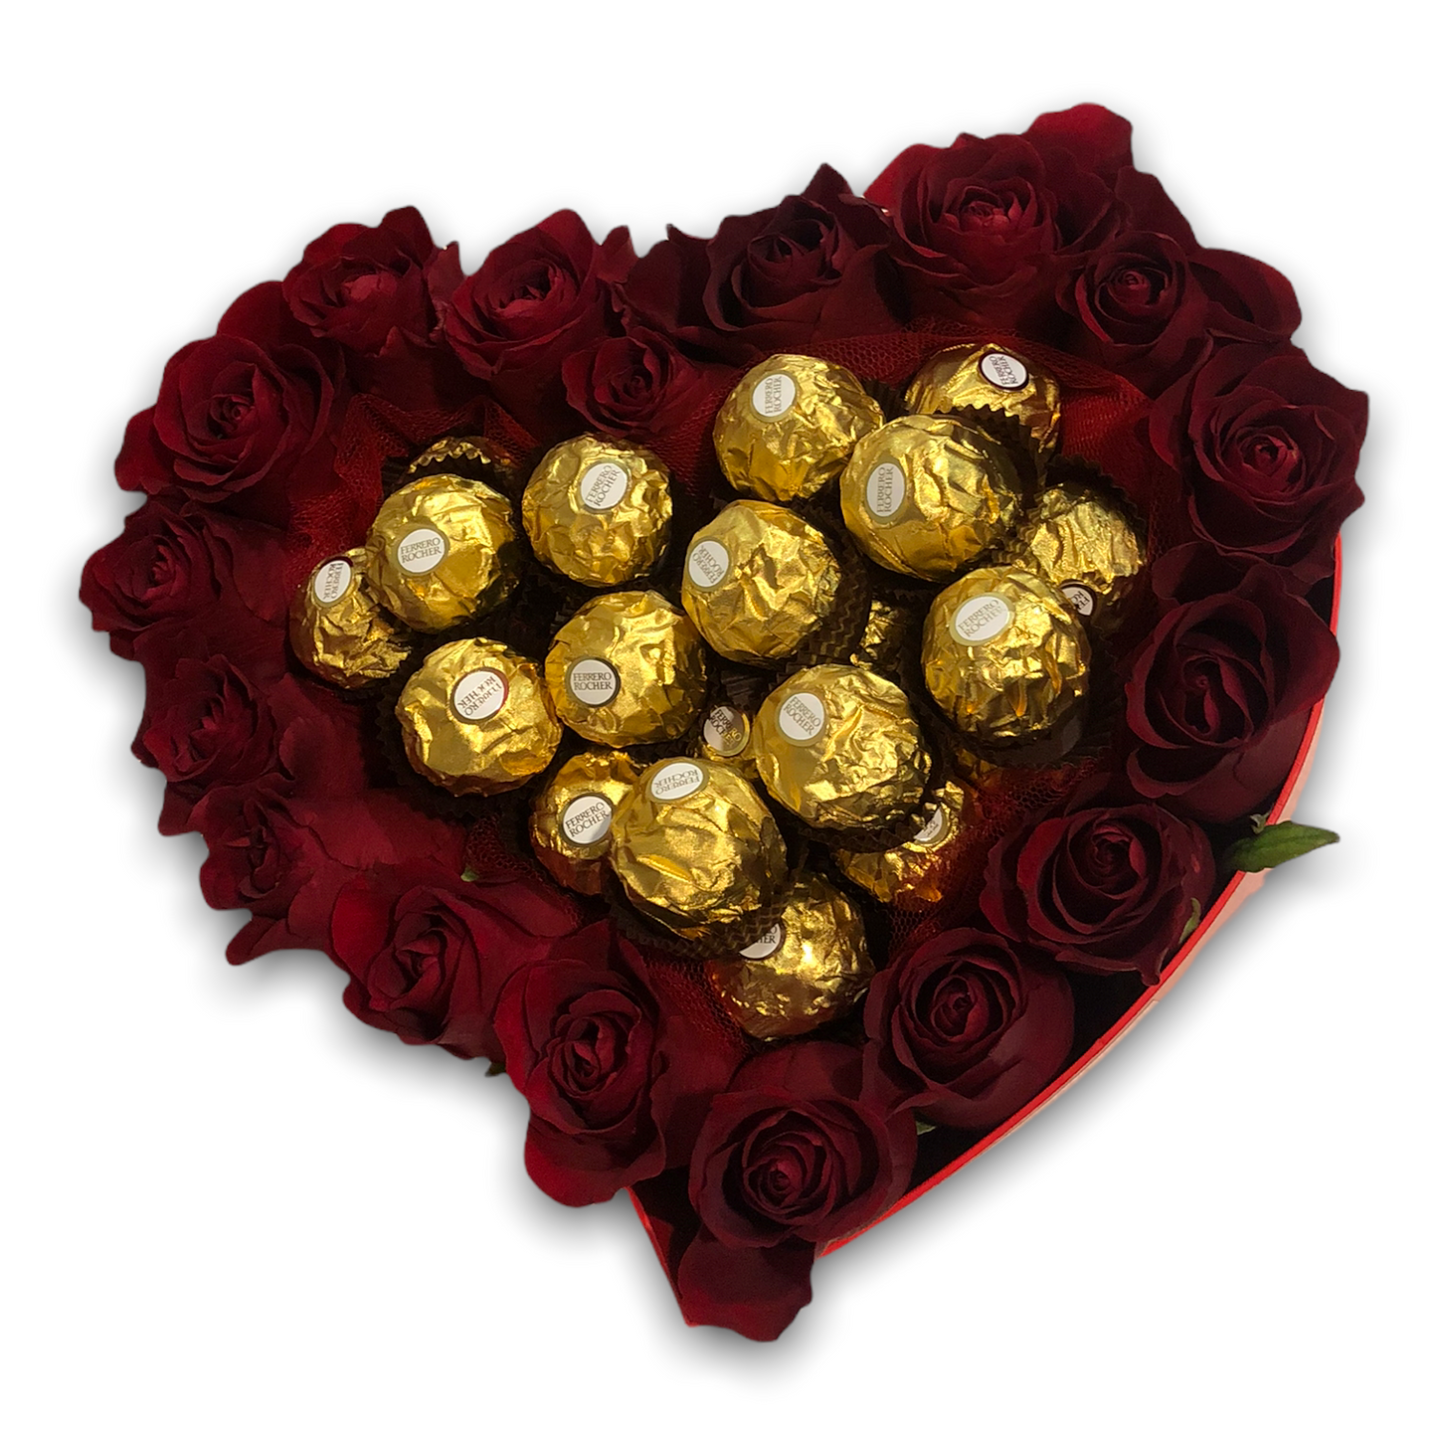 Heart of roses & Ferrero Rosher